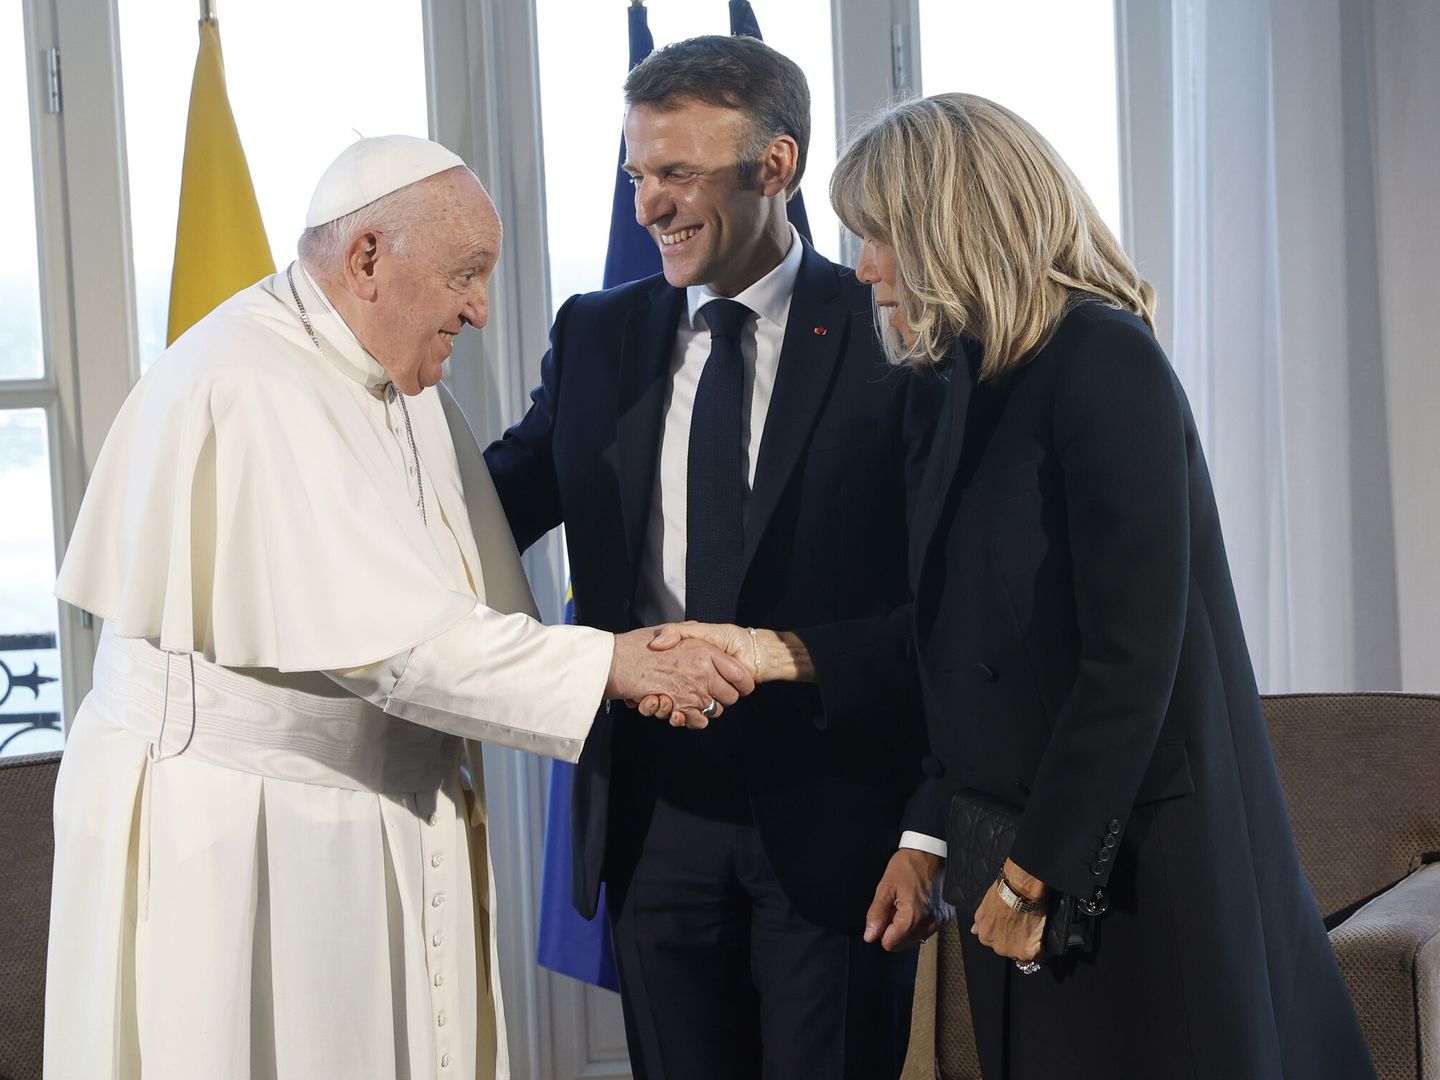 El Papa Francisco junto a Emmanuel Macron y Brigitte Macron. (EFE/EPA/Sebastien Nogier)